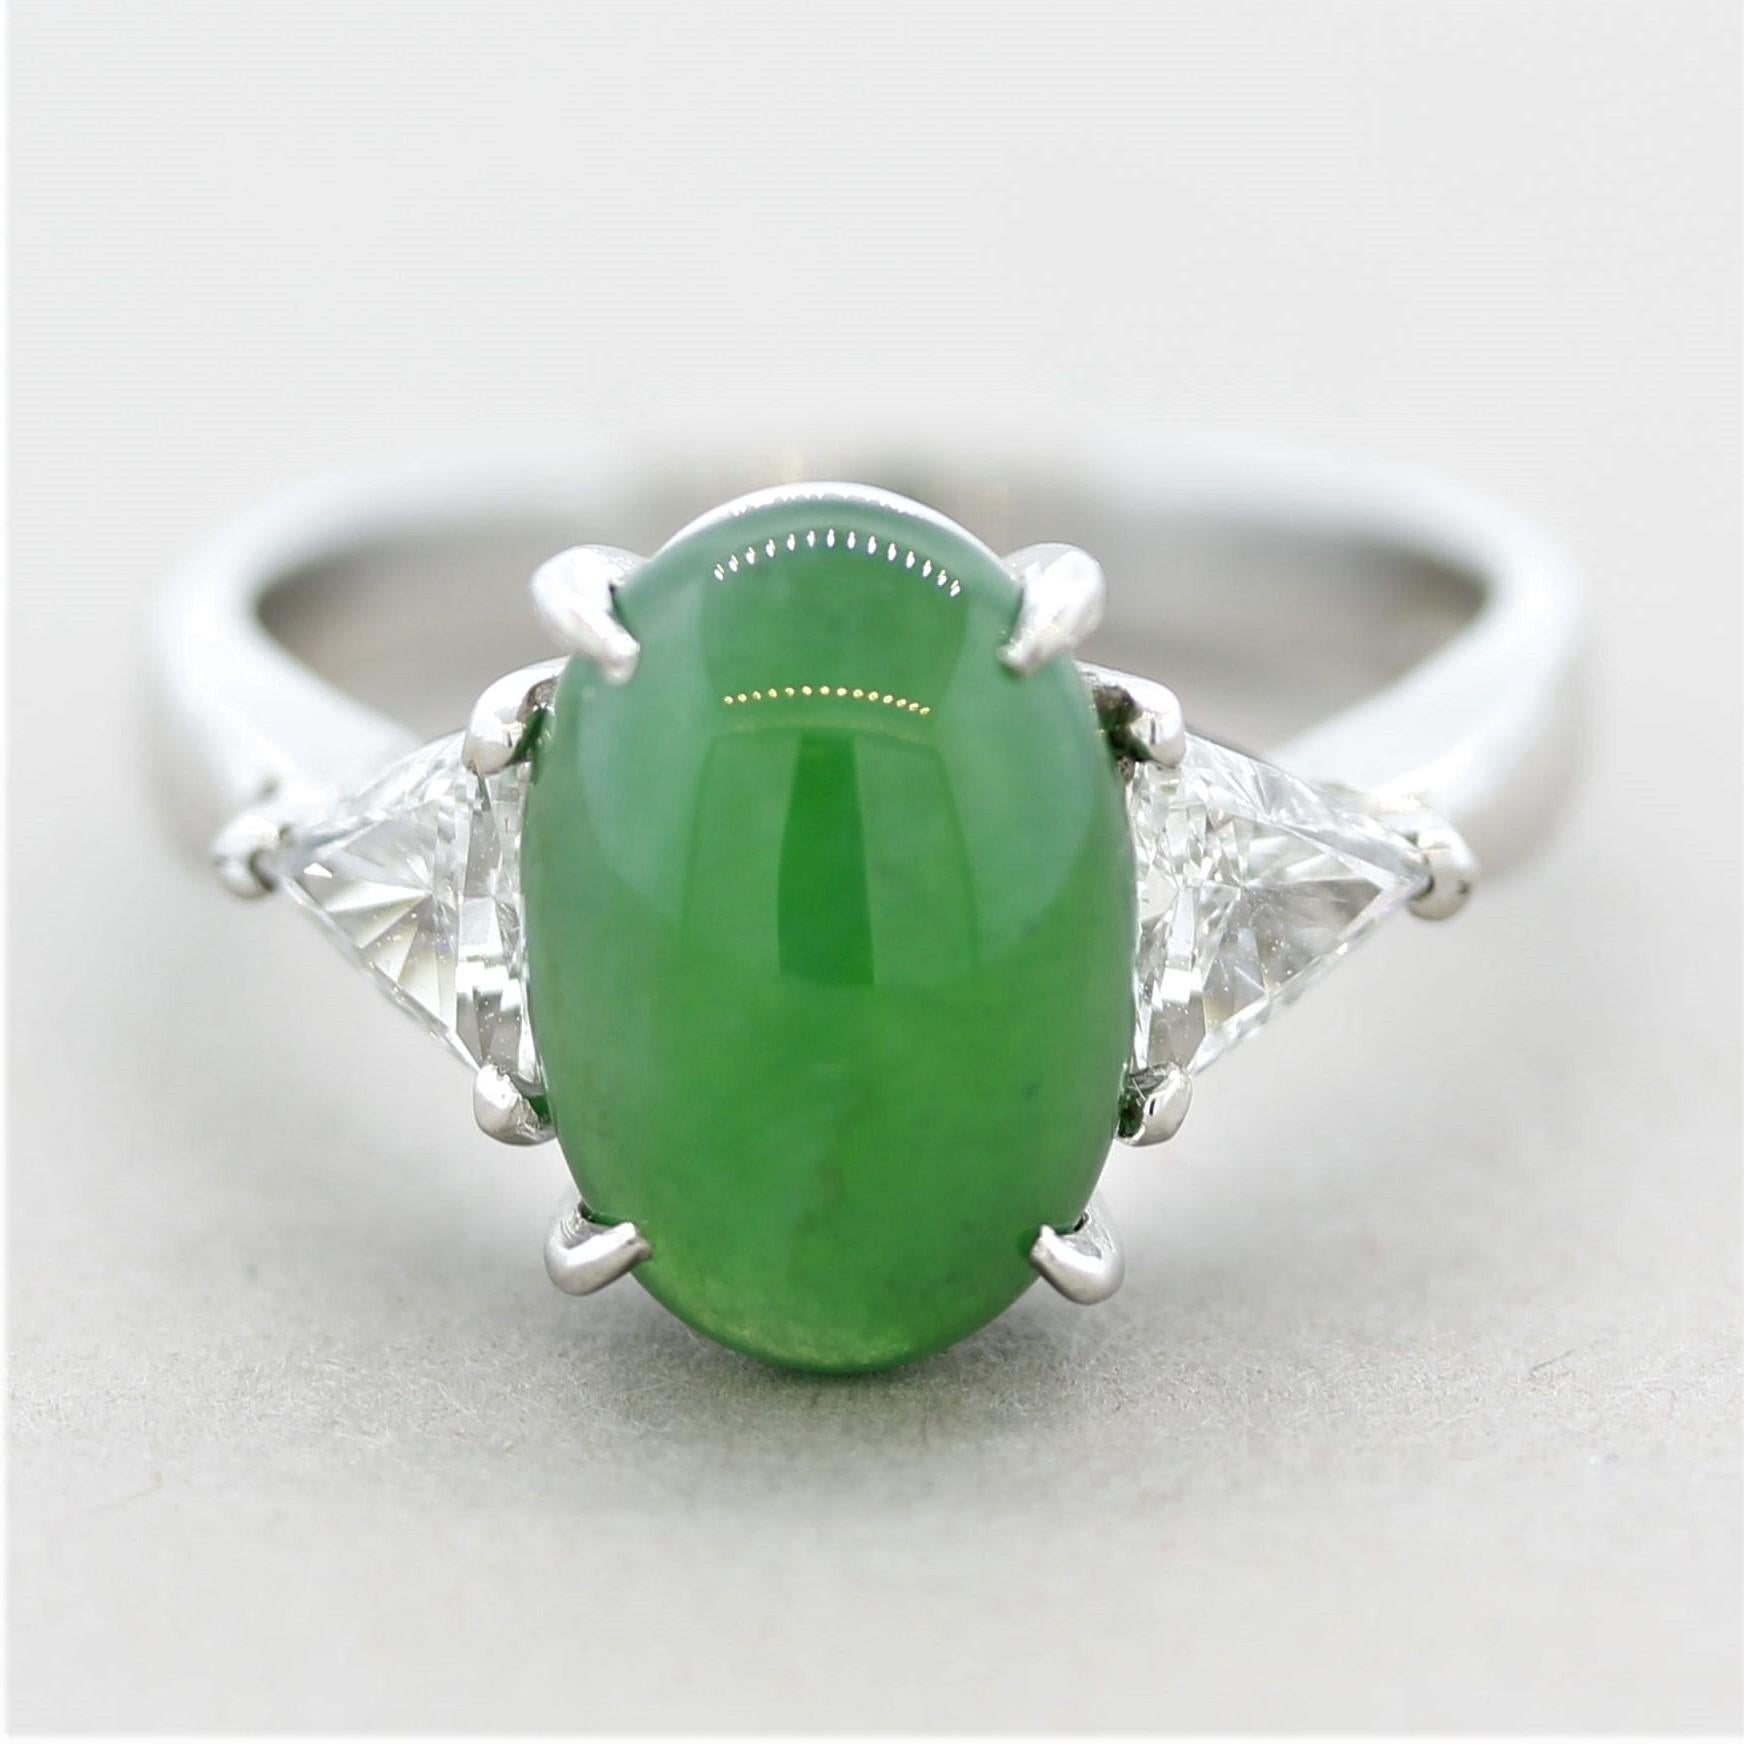 Ein klassischer 3-Stein-Ring mit einem natürlichen Jadeit von 3,65 Karat! Es hat eine leuchtend grüne Farbe mit ausgezeichnetem Glanz und Transluzenz. Er wird von zwei dreieckigen Diamanten an den Seiten akzentuiert, die insgesamt 0,52 Karat wiegen.